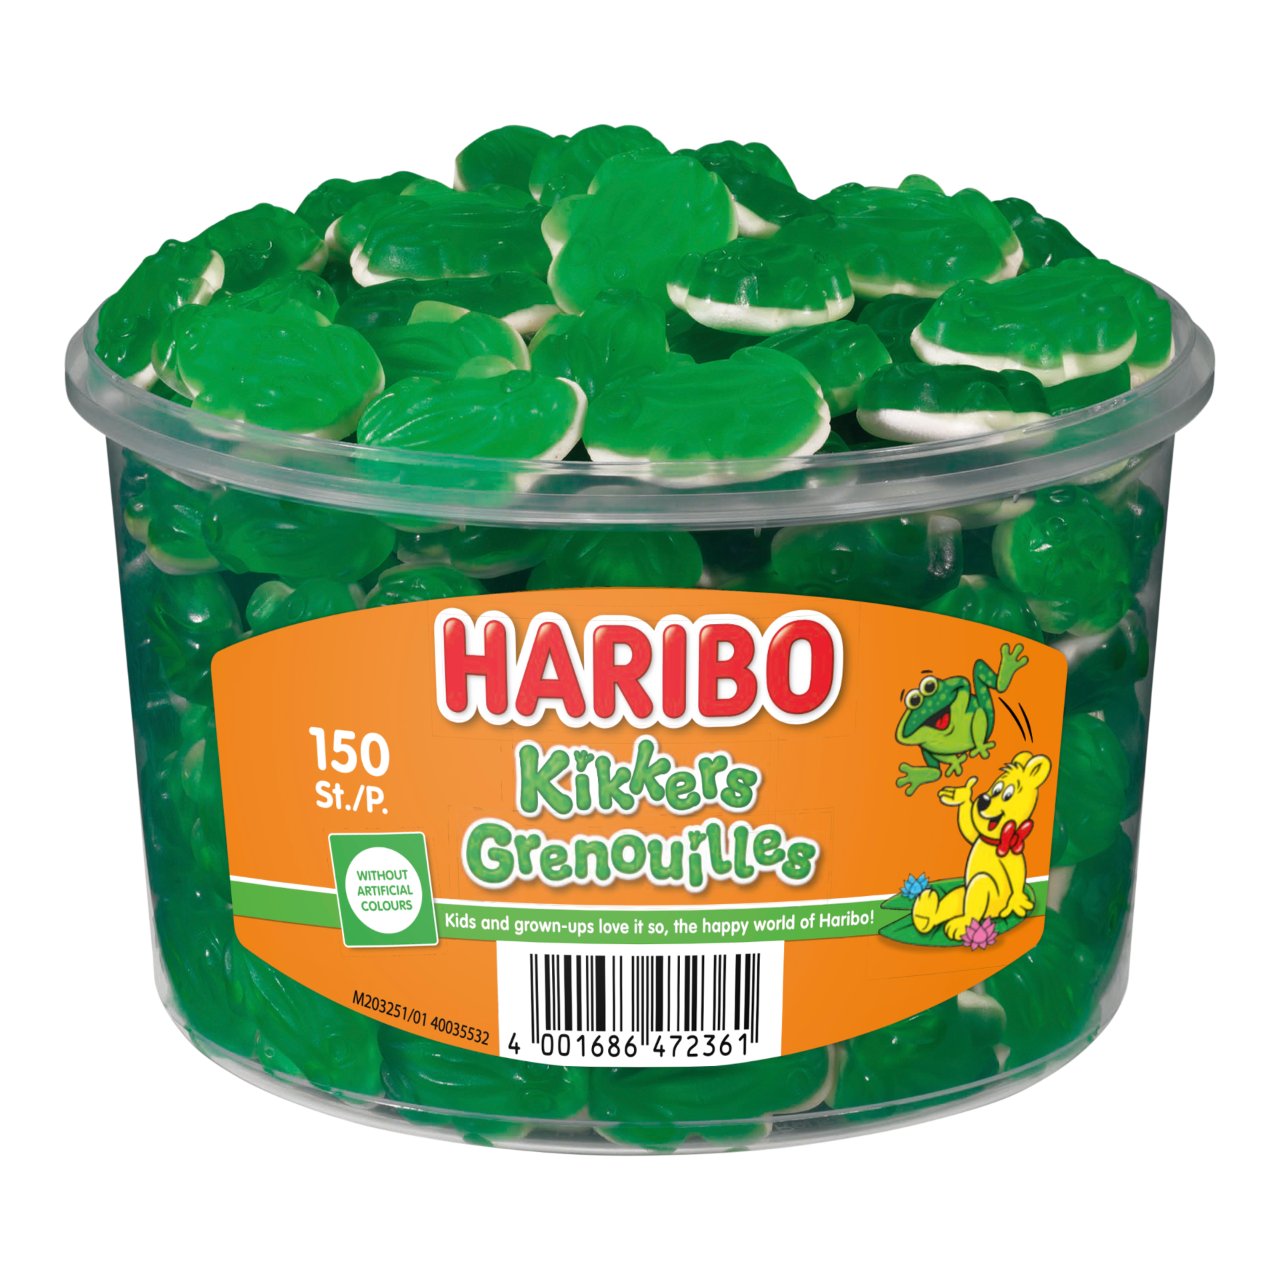 Haribo Kikkers Silo (150 Stuks) - van Haribo - Nu voor maar €11.95 bij Mijn Snoepgoed